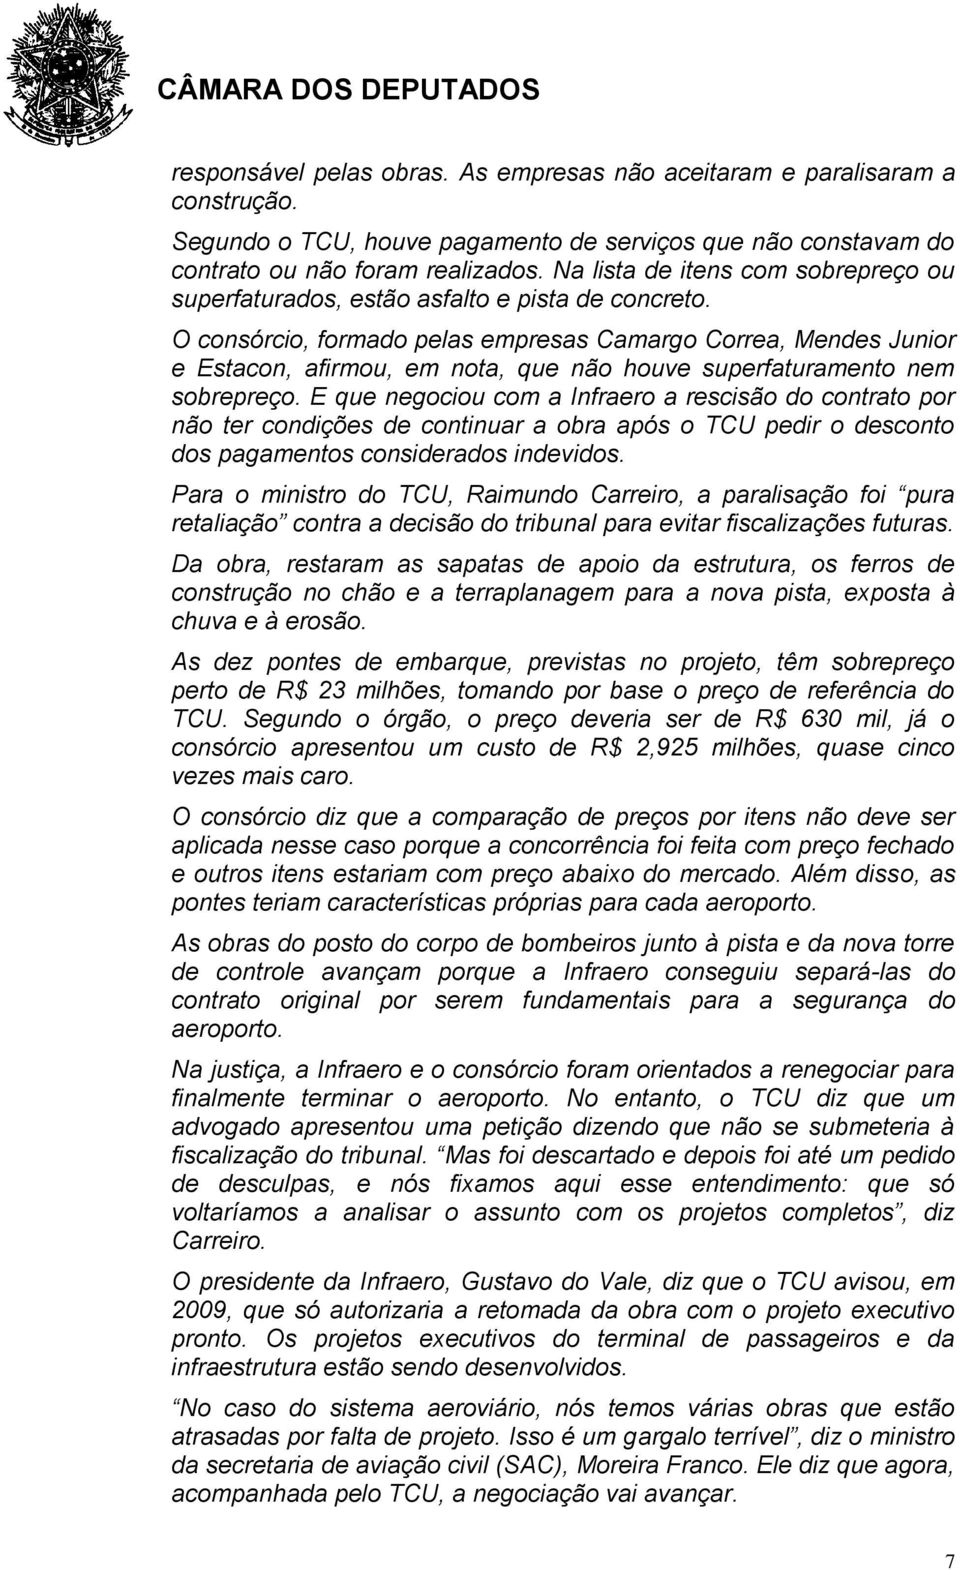 O consórcio, formado pelas empresas Camargo Correa, Mendes Junior e Estacon, afirmou, em nota, que não houve superfaturamento nem sobrepreço.